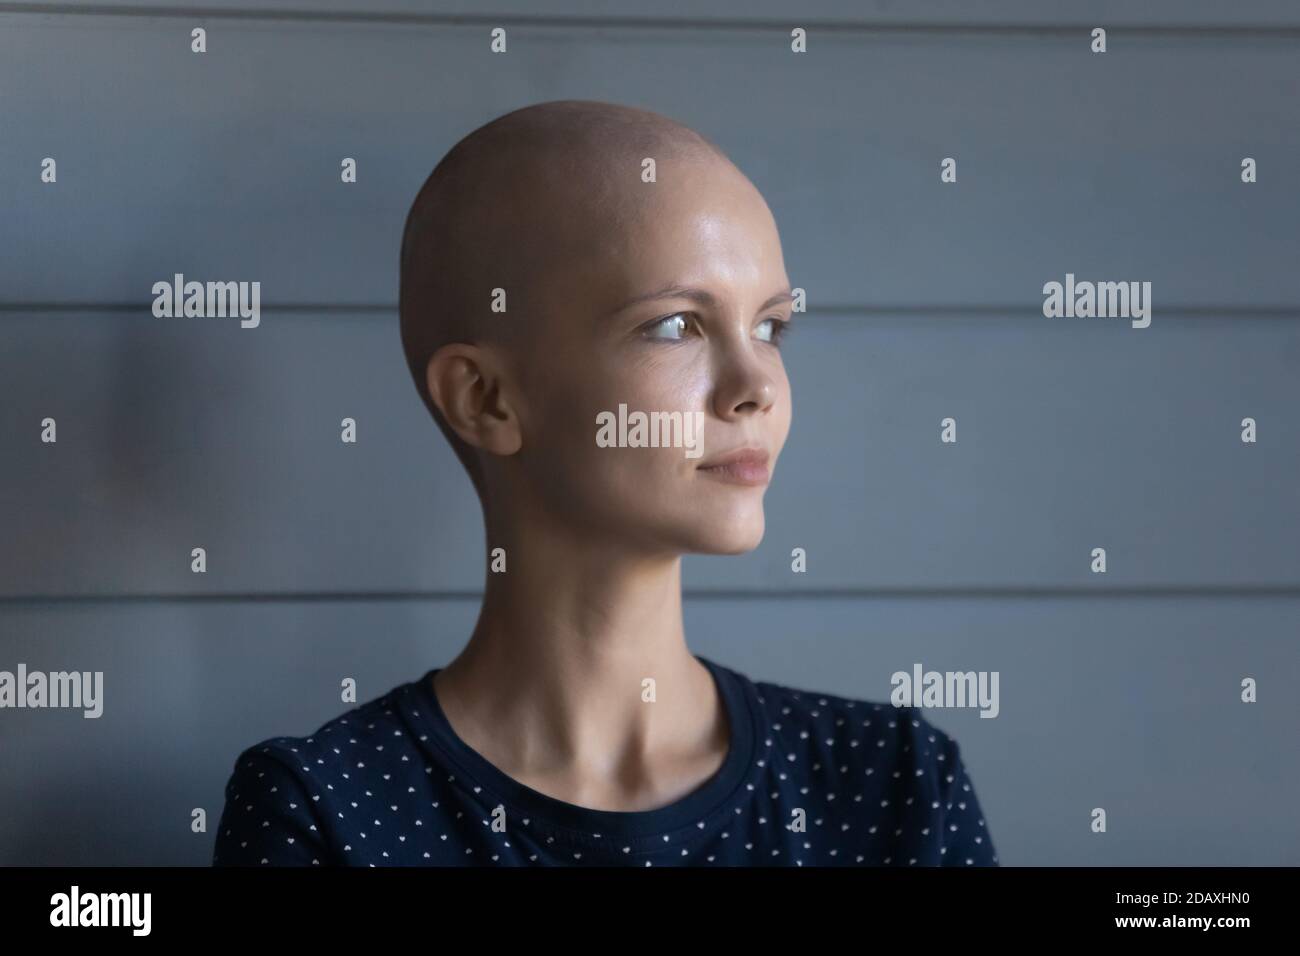 Concentrata giovane donna diagnosticata con oncologia guardare avanti con coraggio Foto Stock